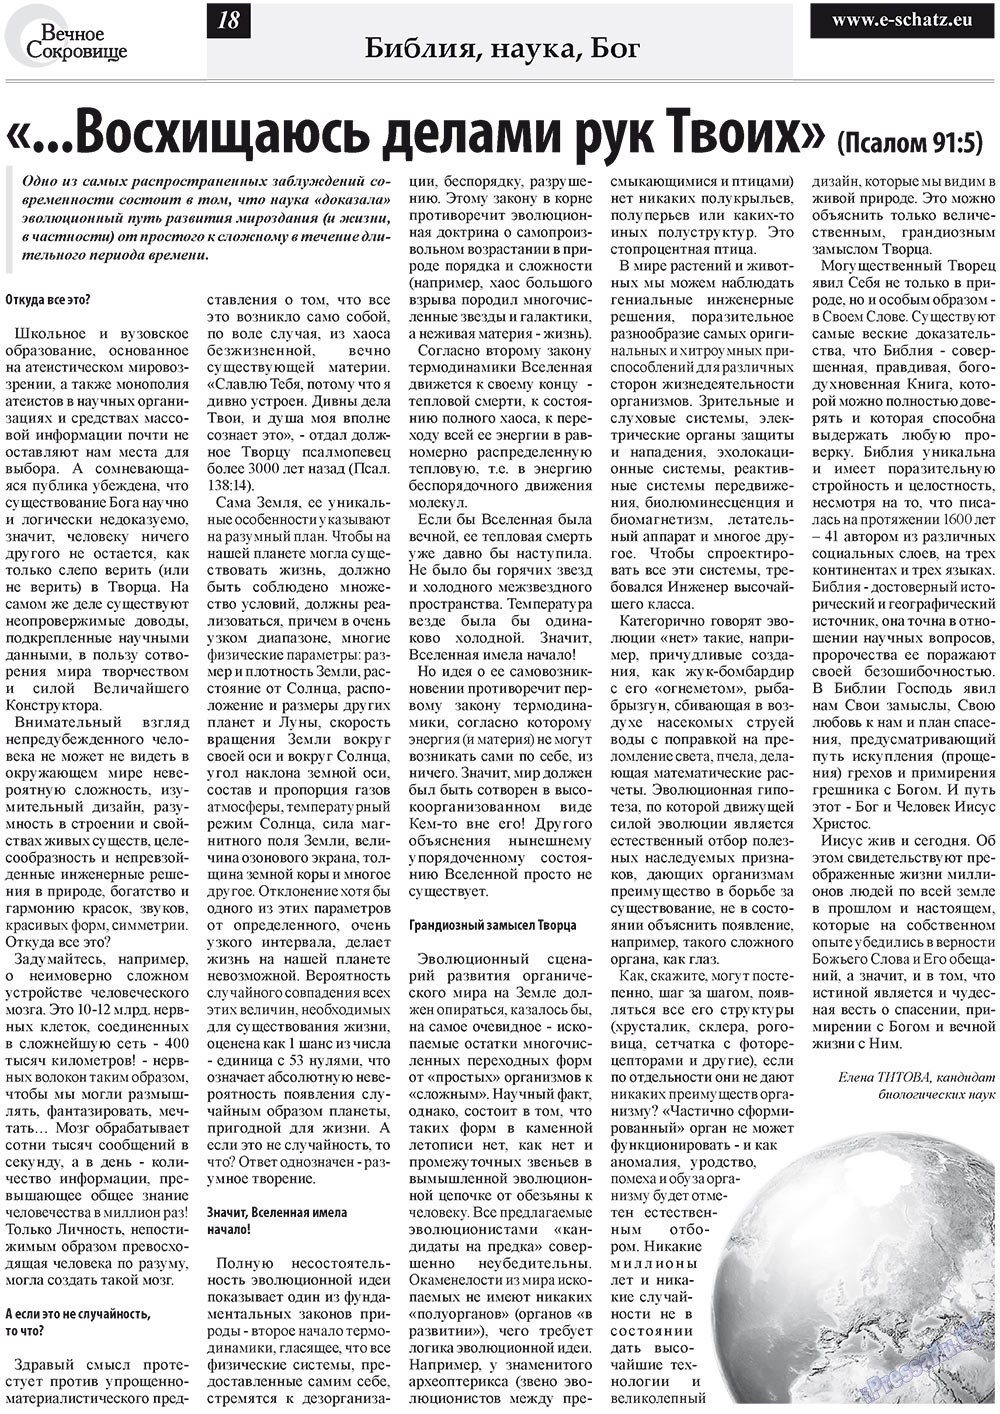 Вечное сокровище (газета). 2011 год, номер 4, стр. 18